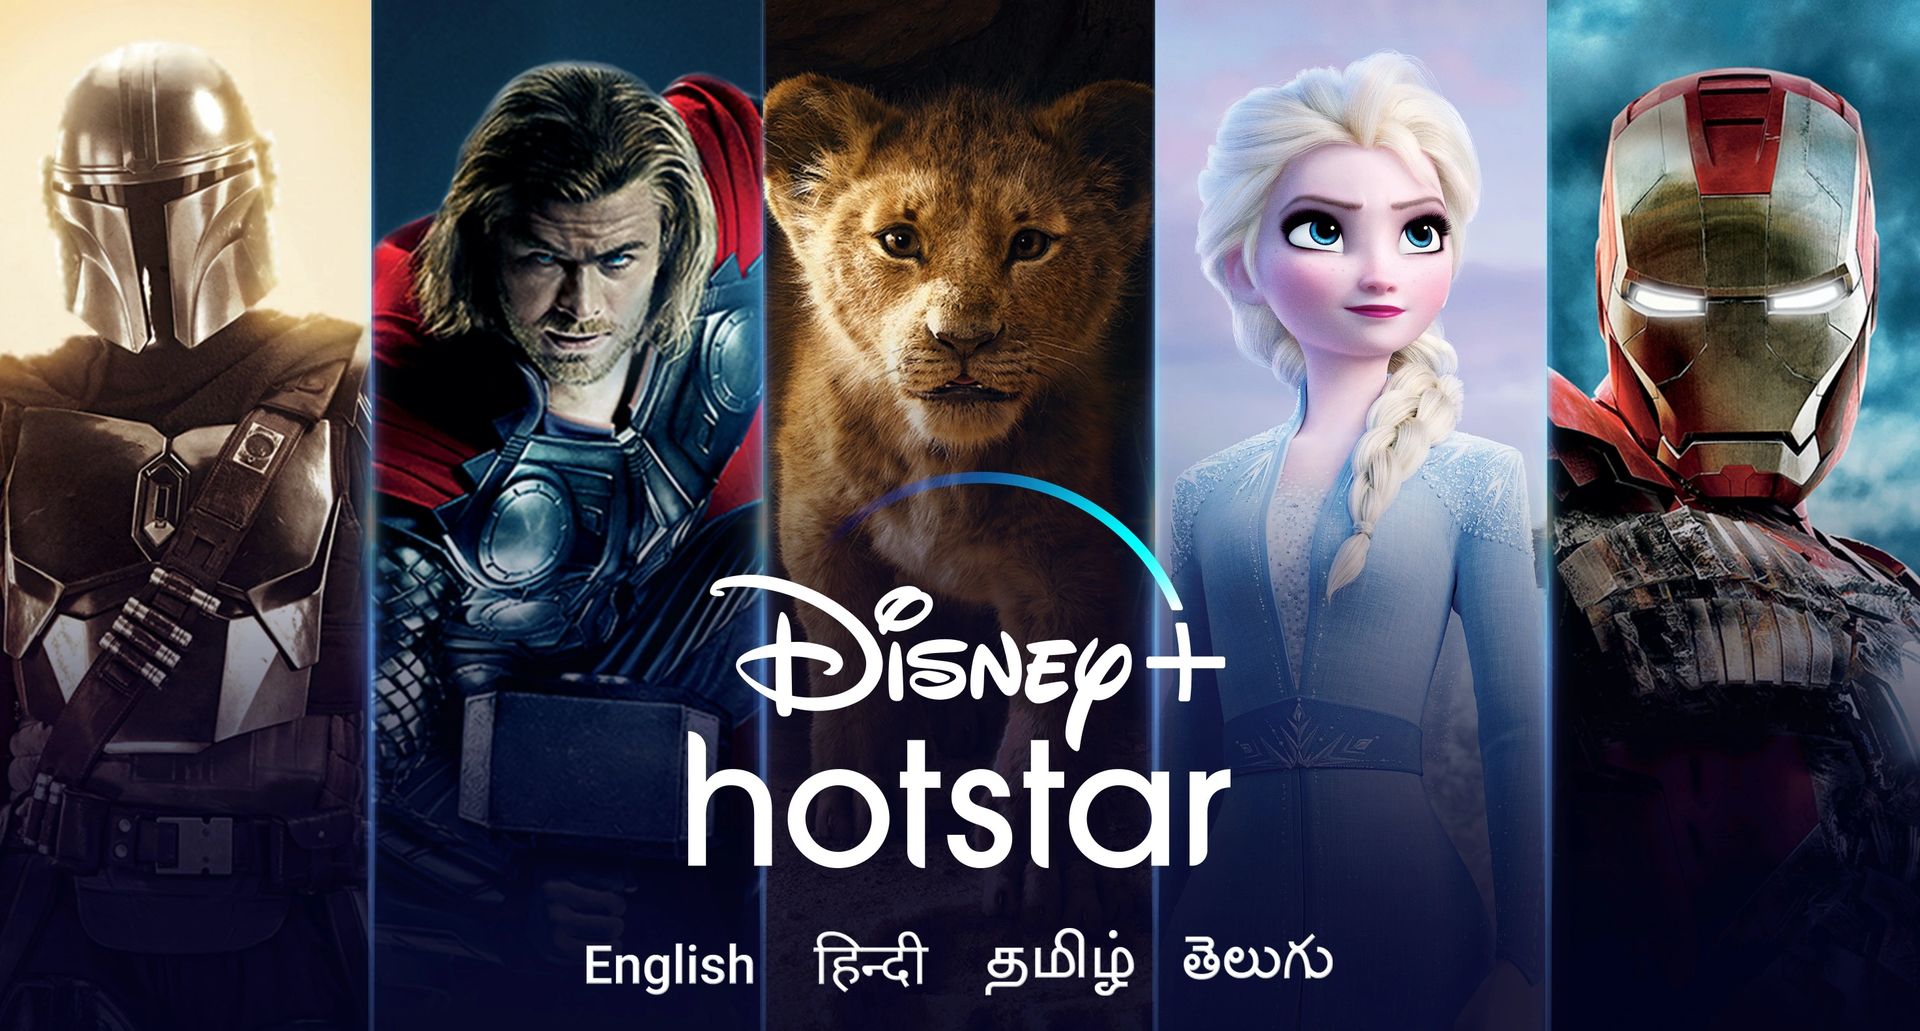 Disney Hotstar werkt niet: hoe dit te verhelpen?